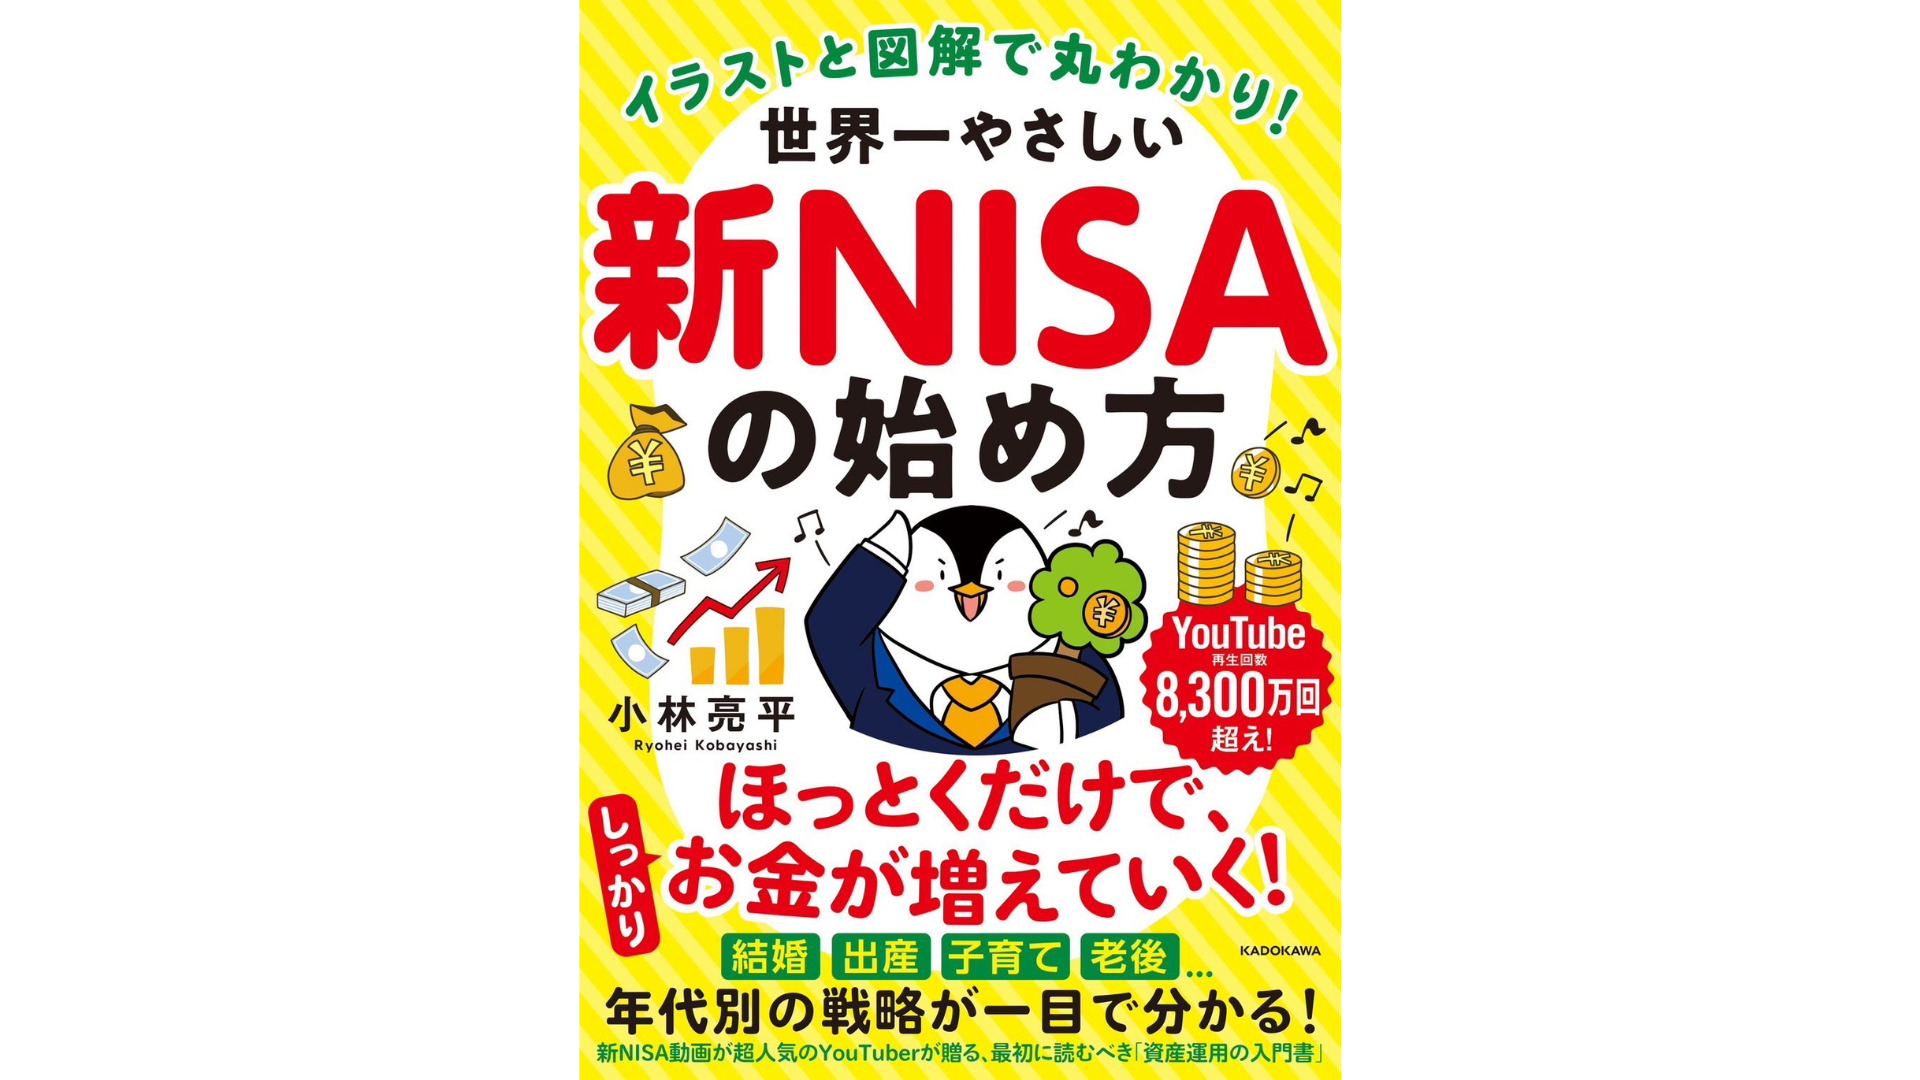 「世界一やさしい新NISA本」の特典申込方法と3大特典詳細